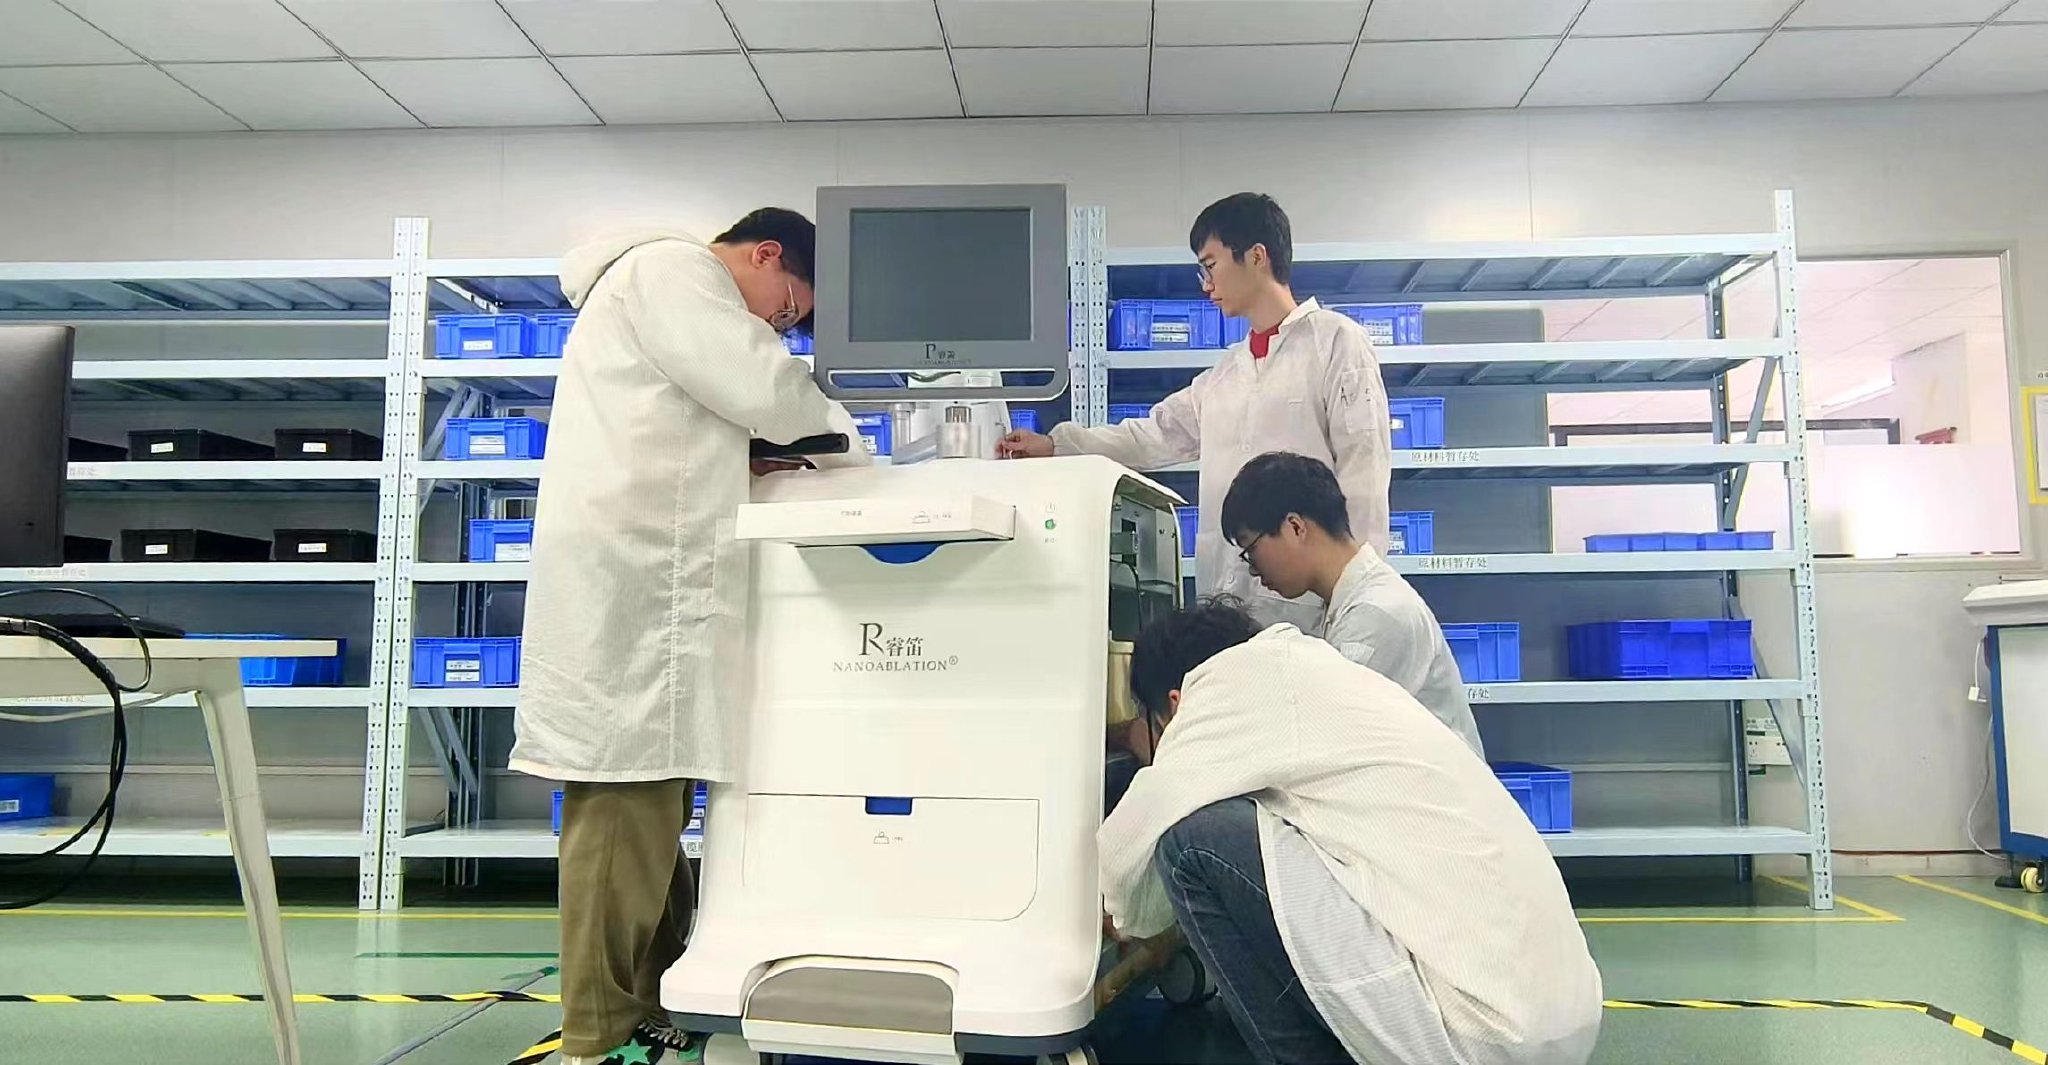 杭州睿笛生物科技有限公司内,研发人员组装纳秒脉冲消融设备